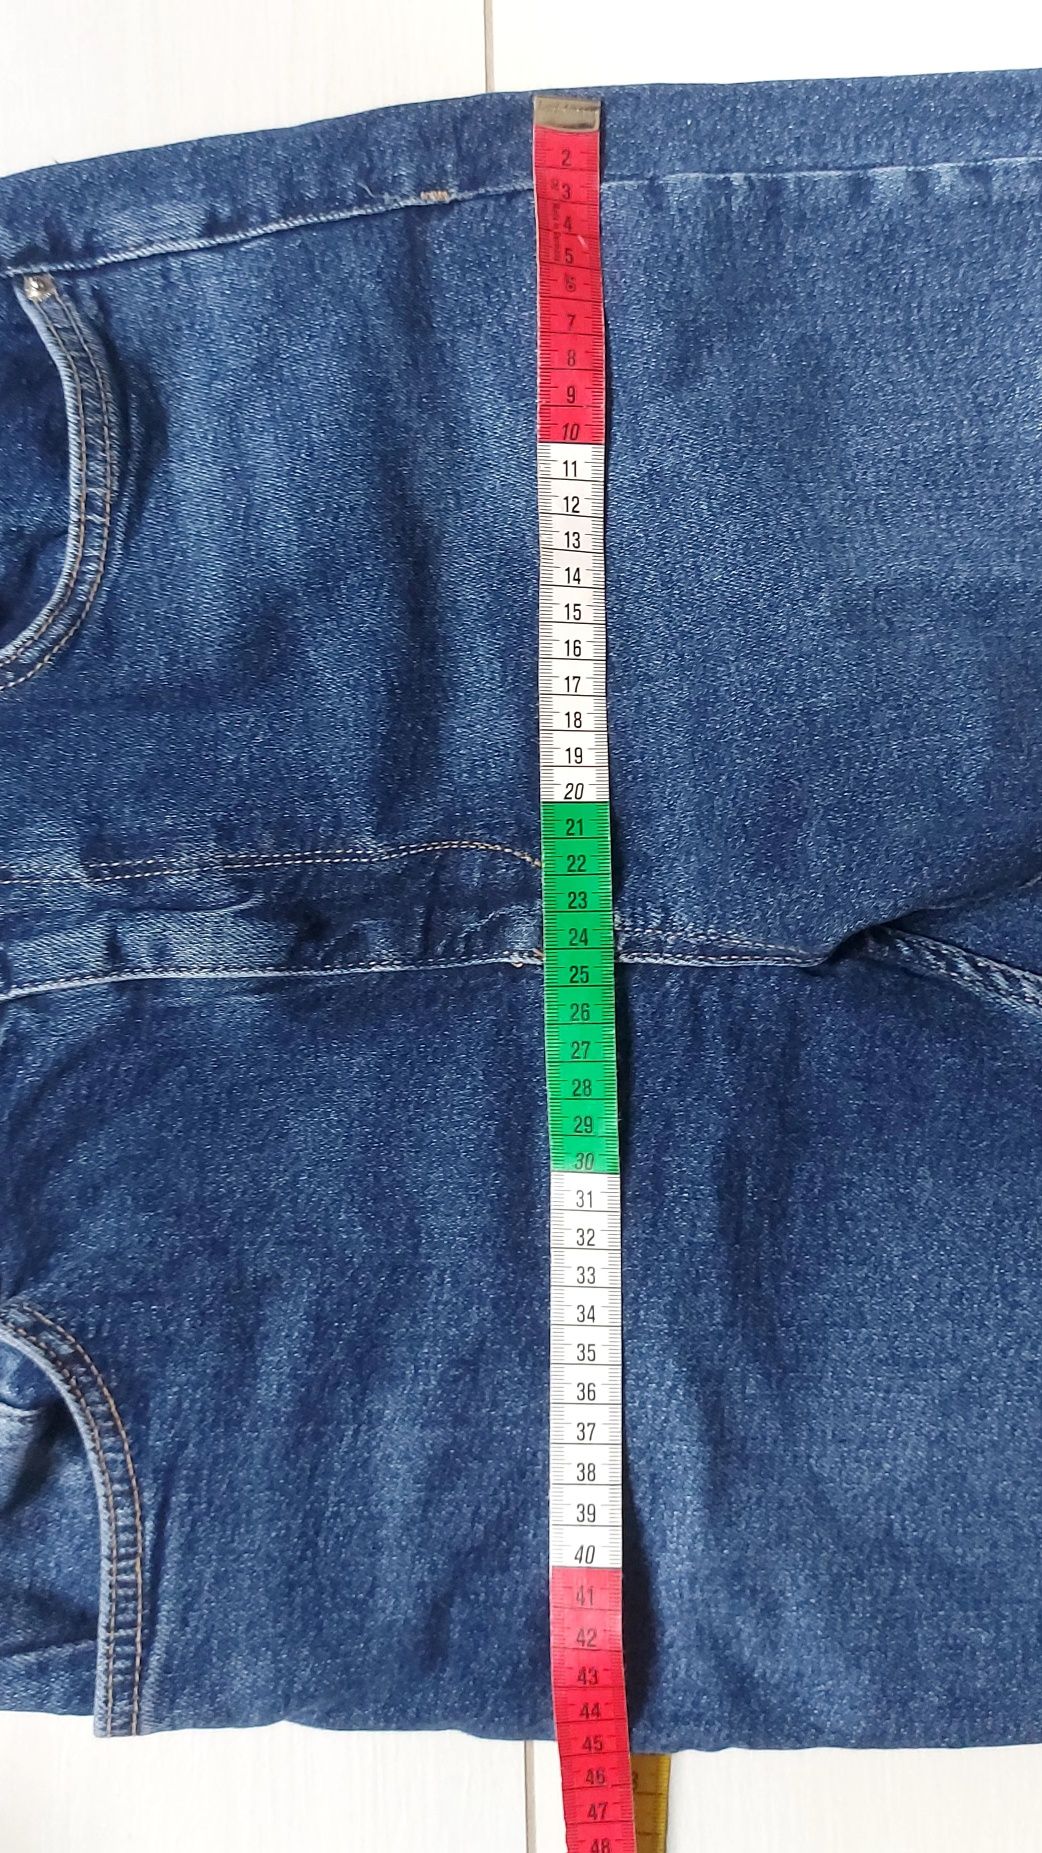 Spodnie jeans Zara rozm 42 rozszerzane u dołu i bardzo długie nogawki